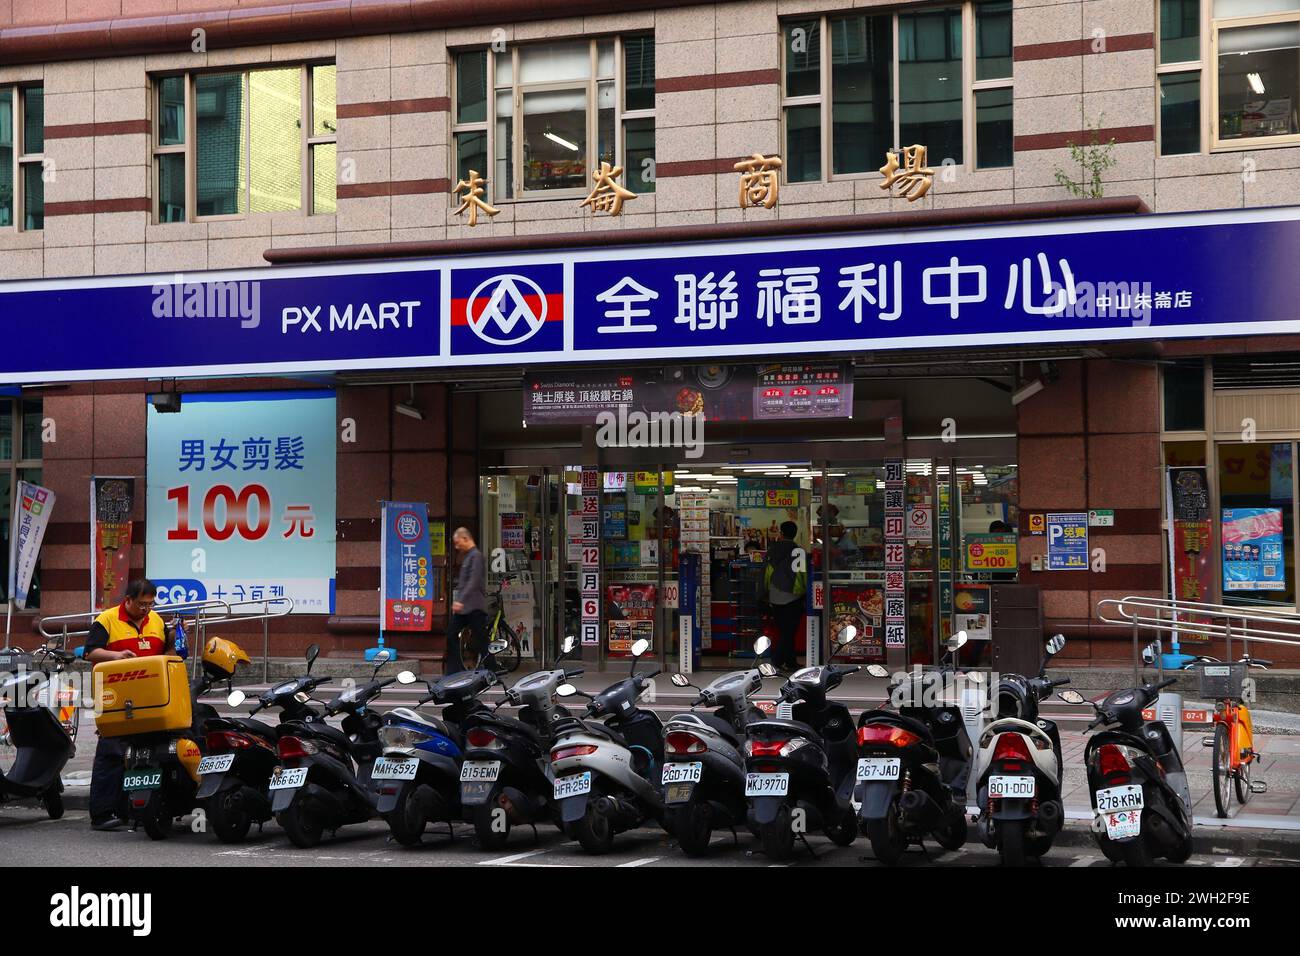 TAIPEI, TAIWAN - 4. DEZEMBER 2018: PX Mart Supermarkt in Taipeh, Taiwan. PX Mart ist eine der größten Handelsketten in Taiwan. Stockfoto